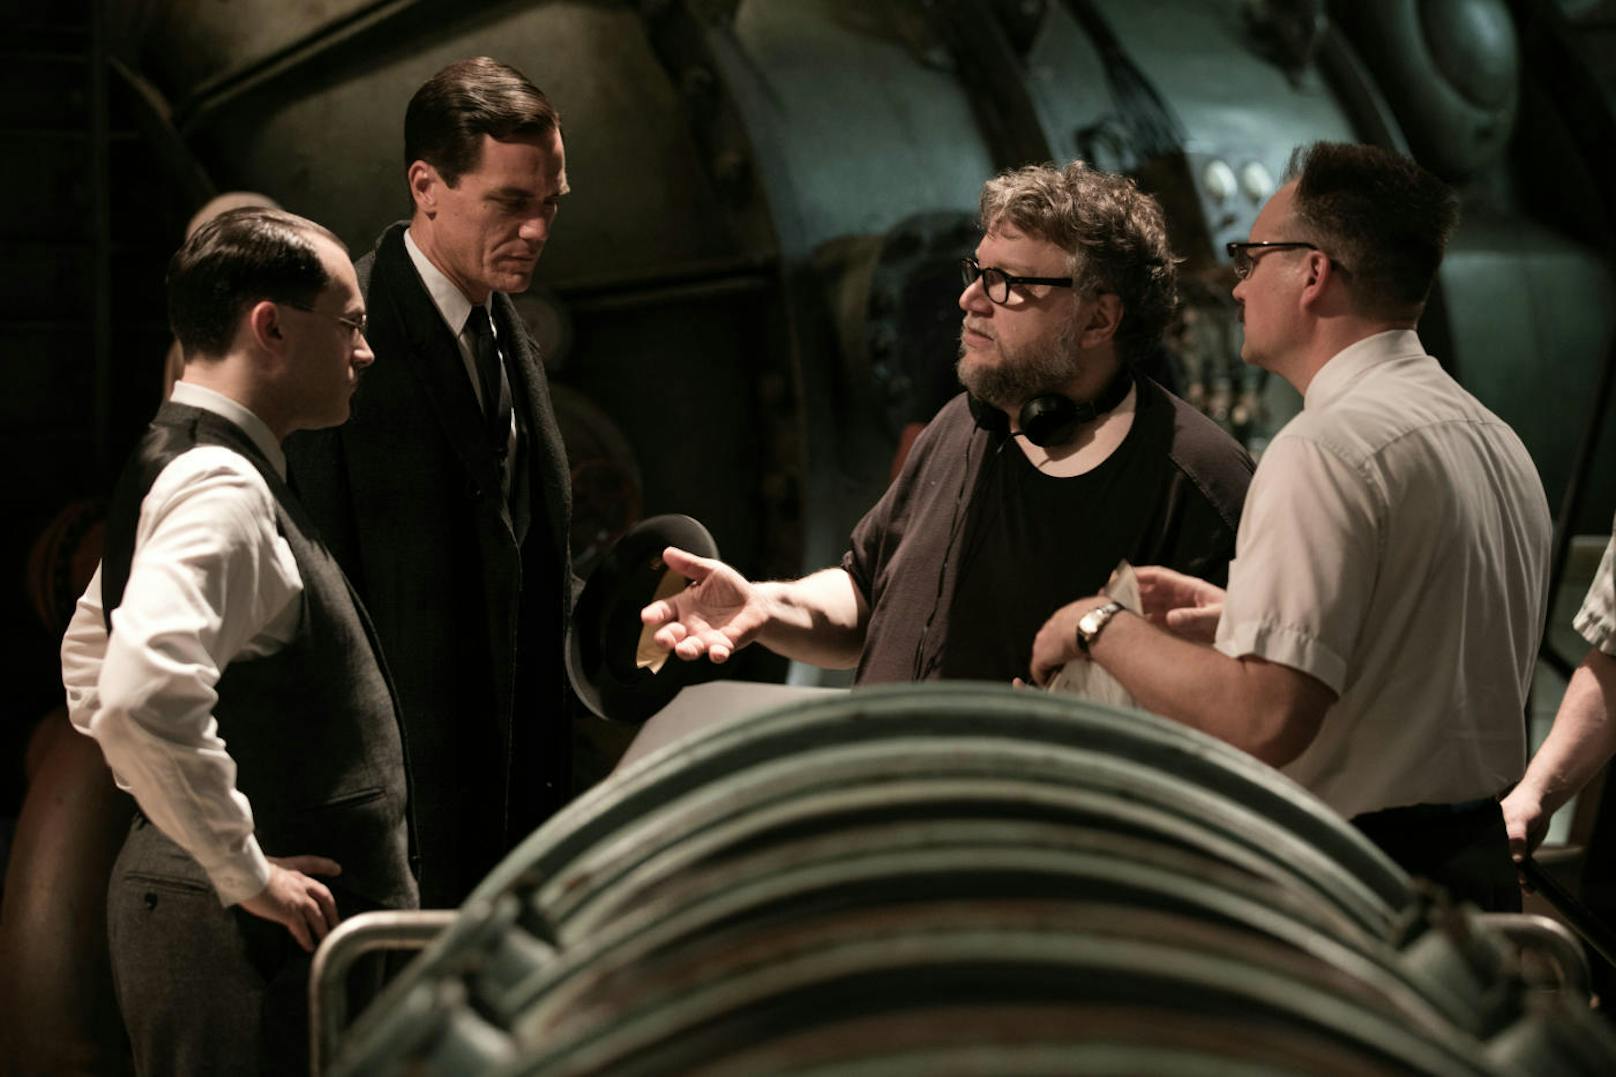 Guillermo del Toro (2. v. r.) bekam für "The Shape of Water" den Golden Globe für die beste Regie überreicht.